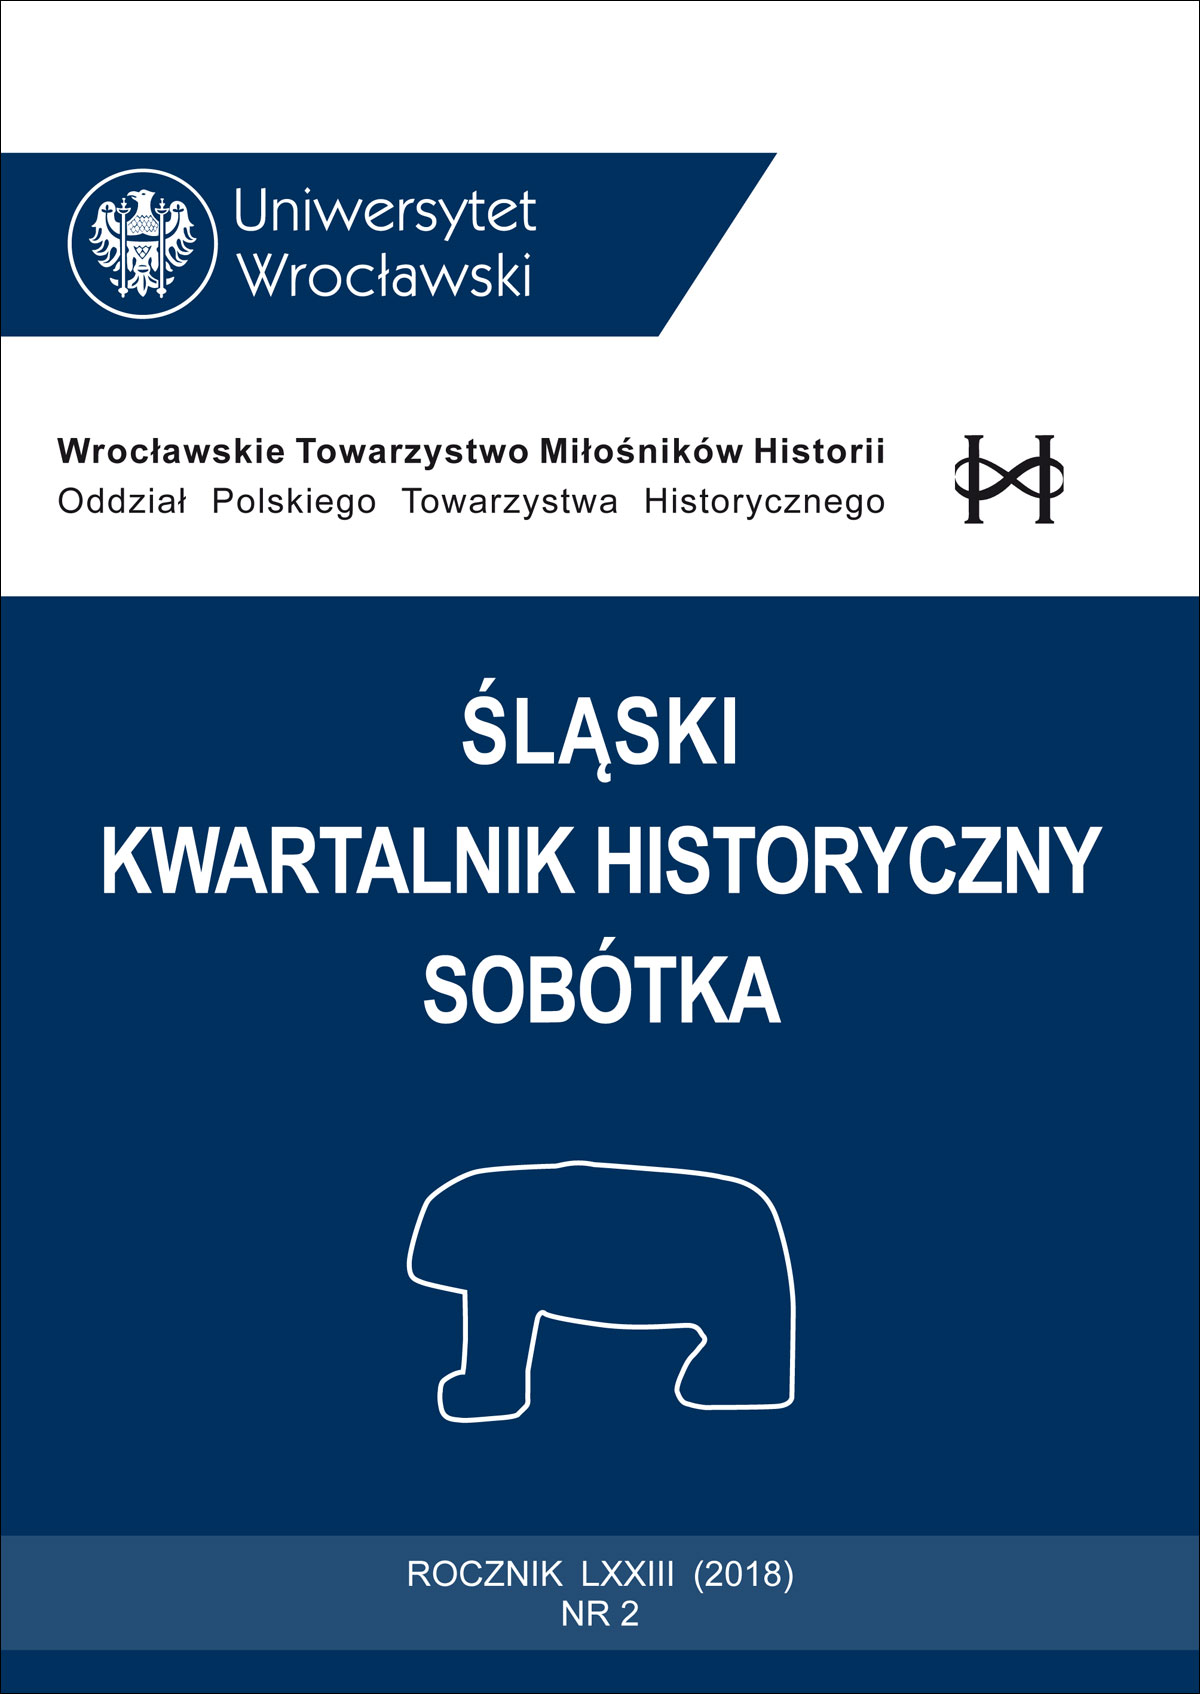 Tadeusz Stegner, Historia turystyki: Polska i świat, Gdańsk: Wydawnictwo Uniwersytetu Gdańskiego, 2016, ss. 295, ill. Cover Image